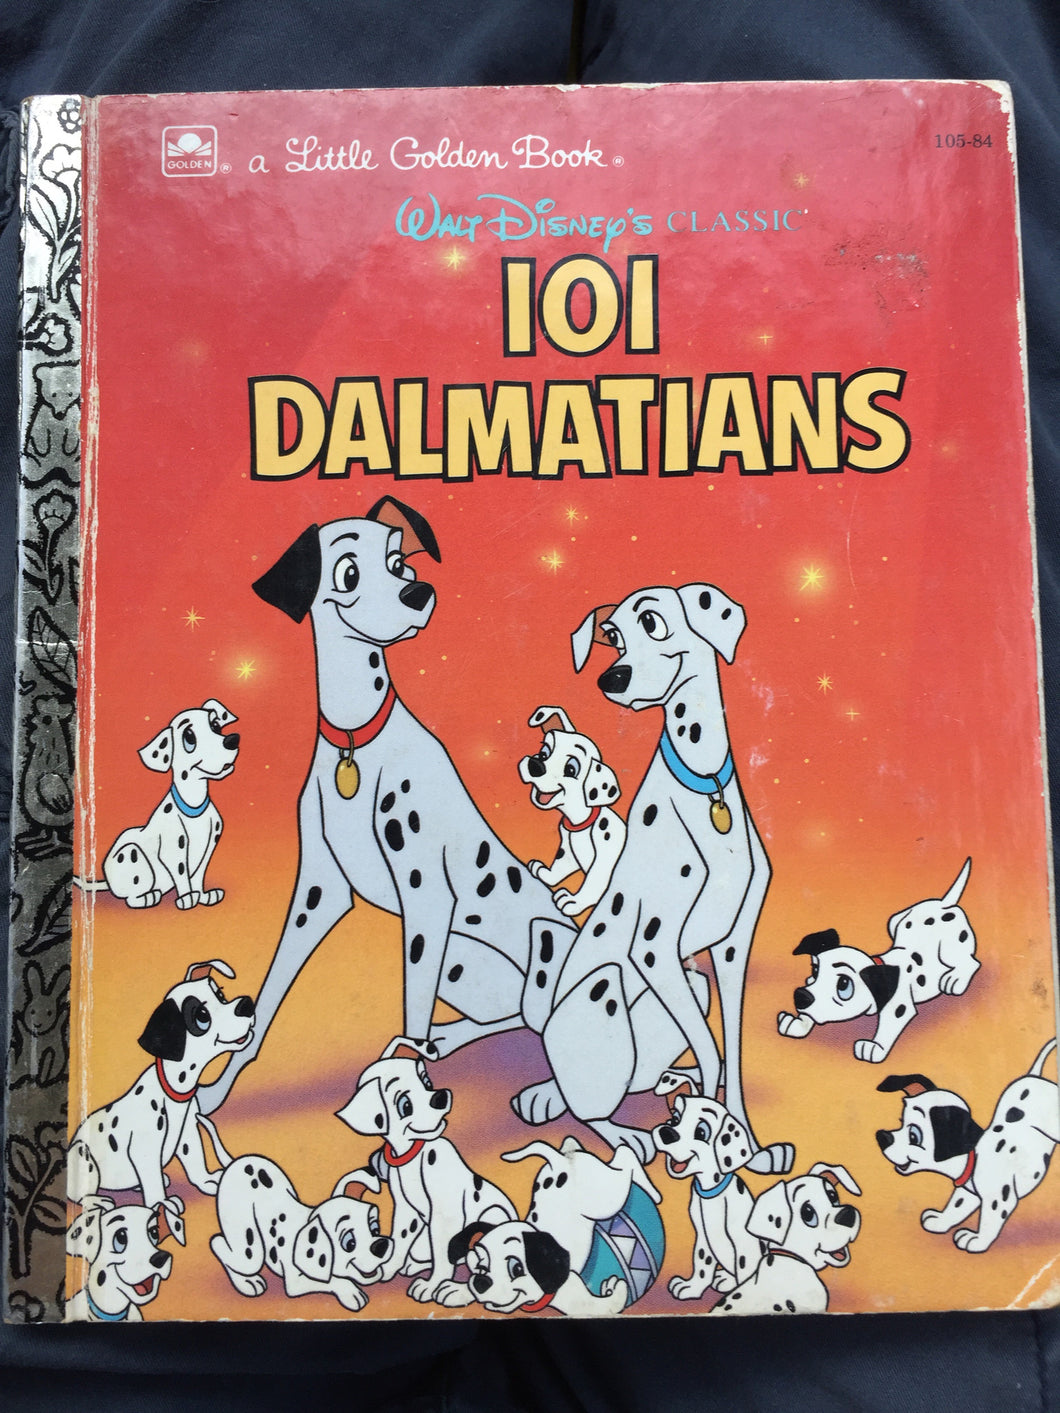 Walt Disney's Classic 101 Dalmatians - Slickcatbooks